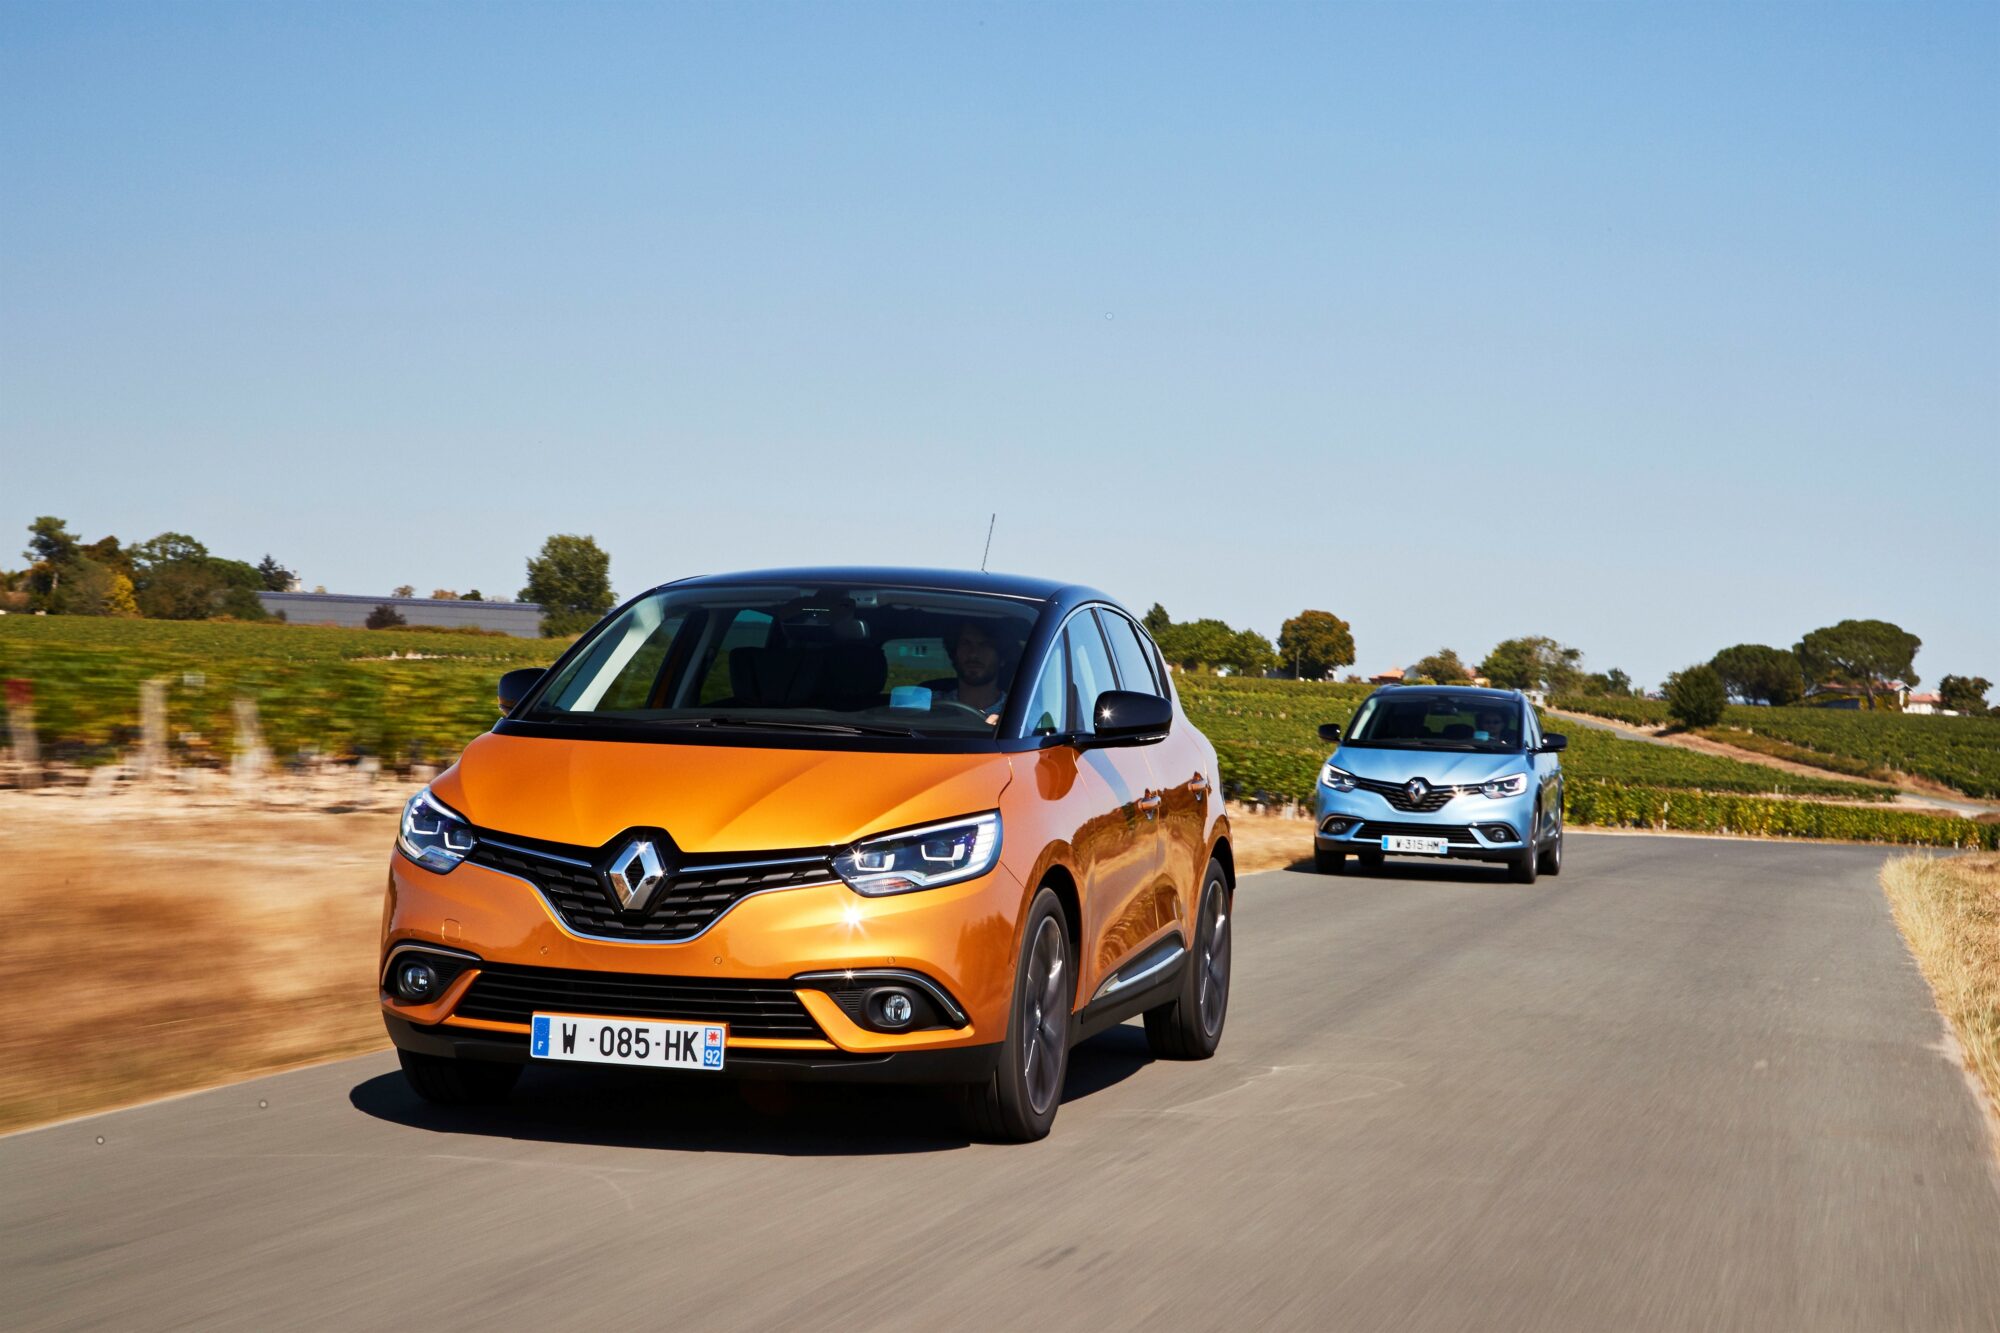 2016- Test Drive Nuova Renault SCENIC e Nuova Renault GRAND SCENIC a Bordeaux